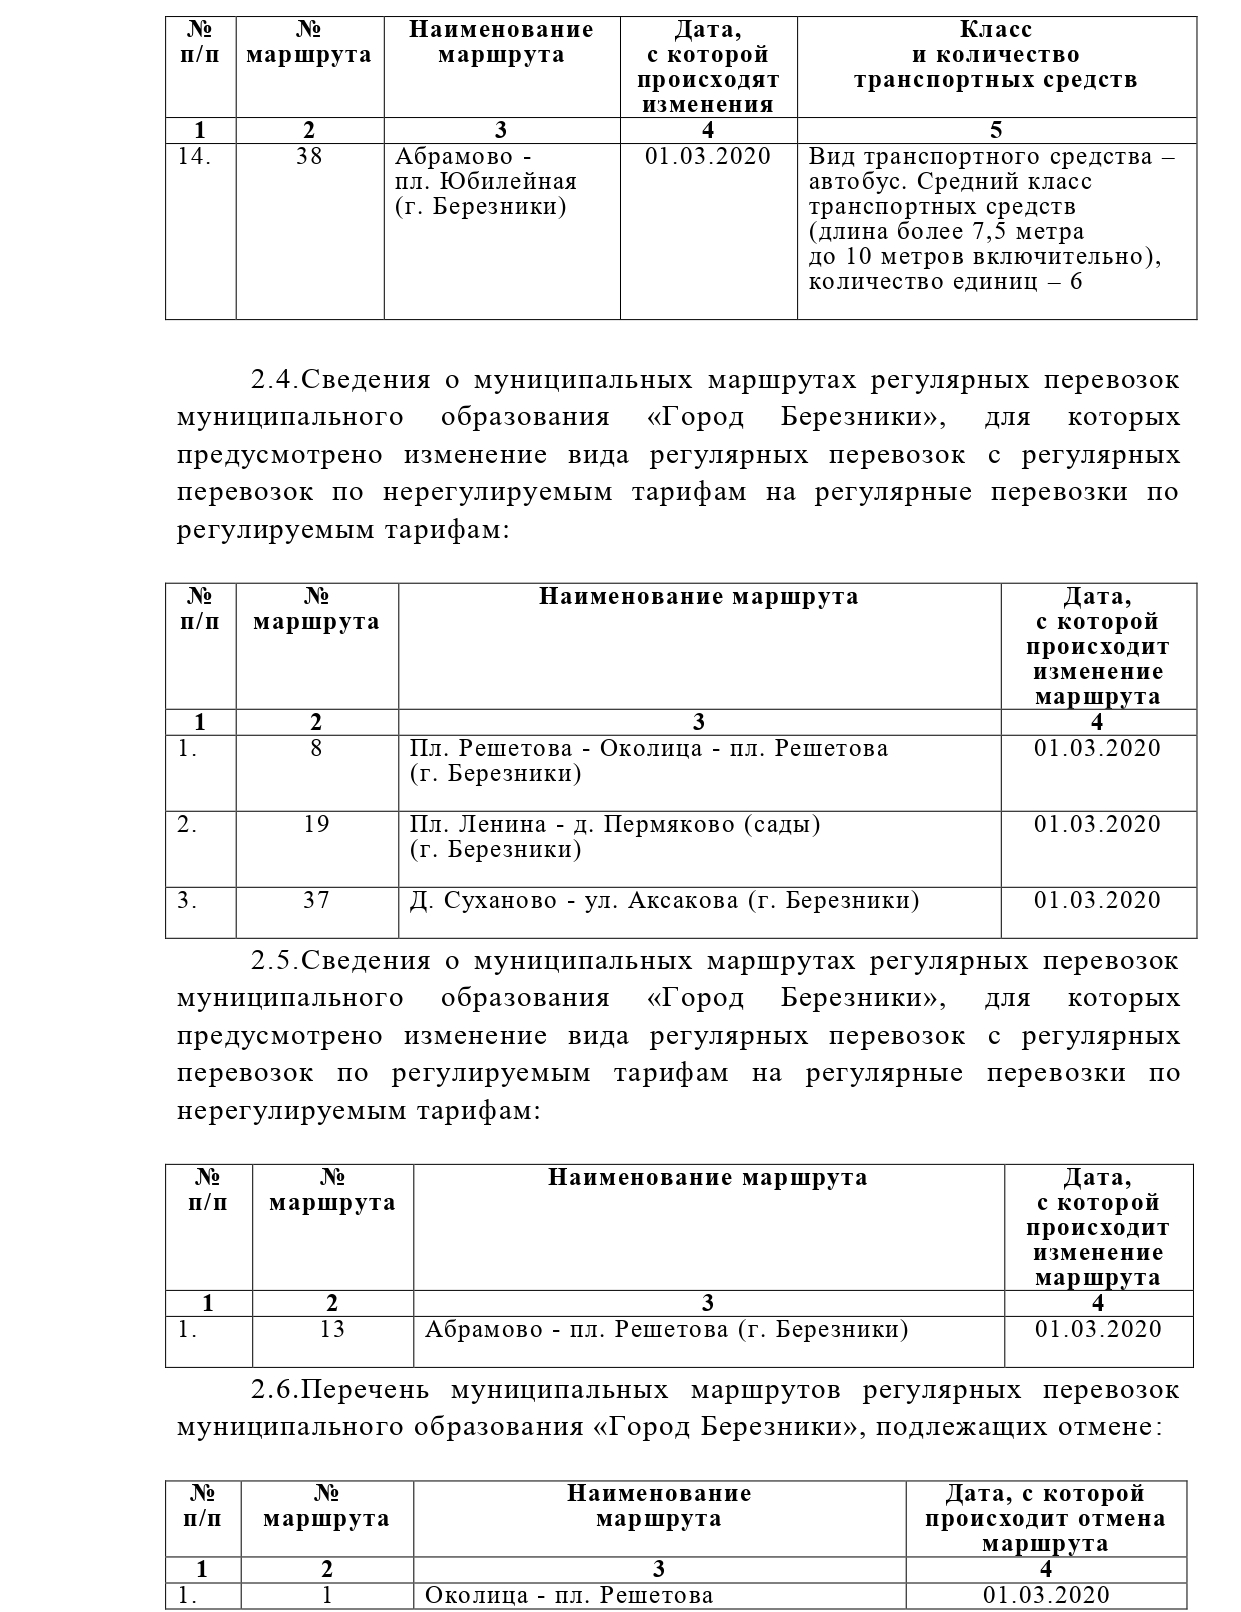 Документ планирования регулярных перевозок по межмуниципальным маршрутам смоленской области